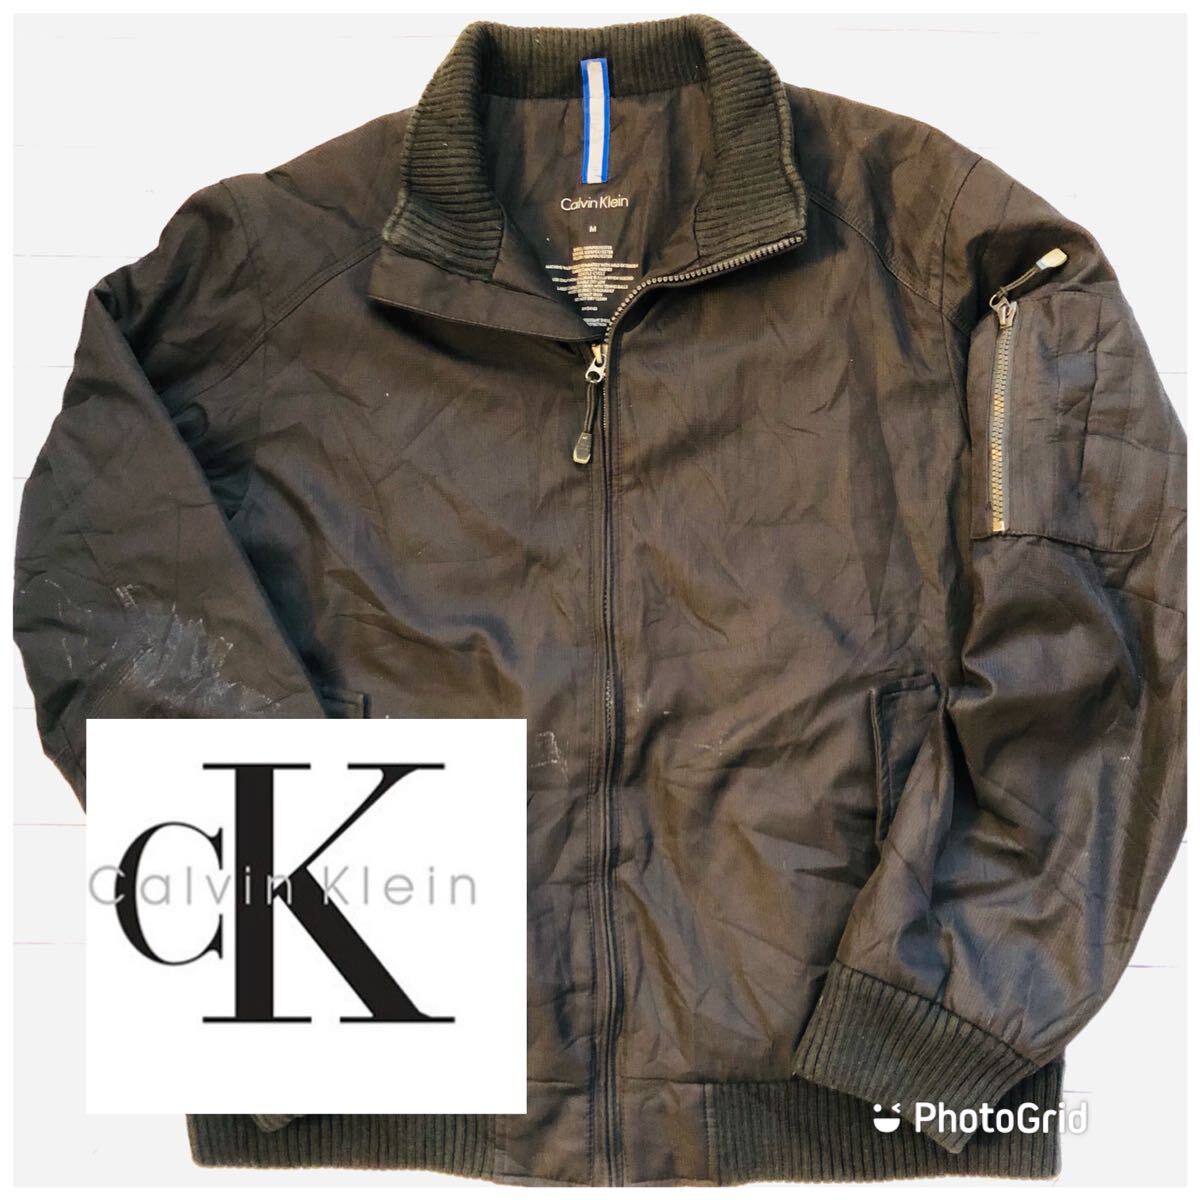  Calvin * Klein Calvin Klein M cotton inside flight jacket black 